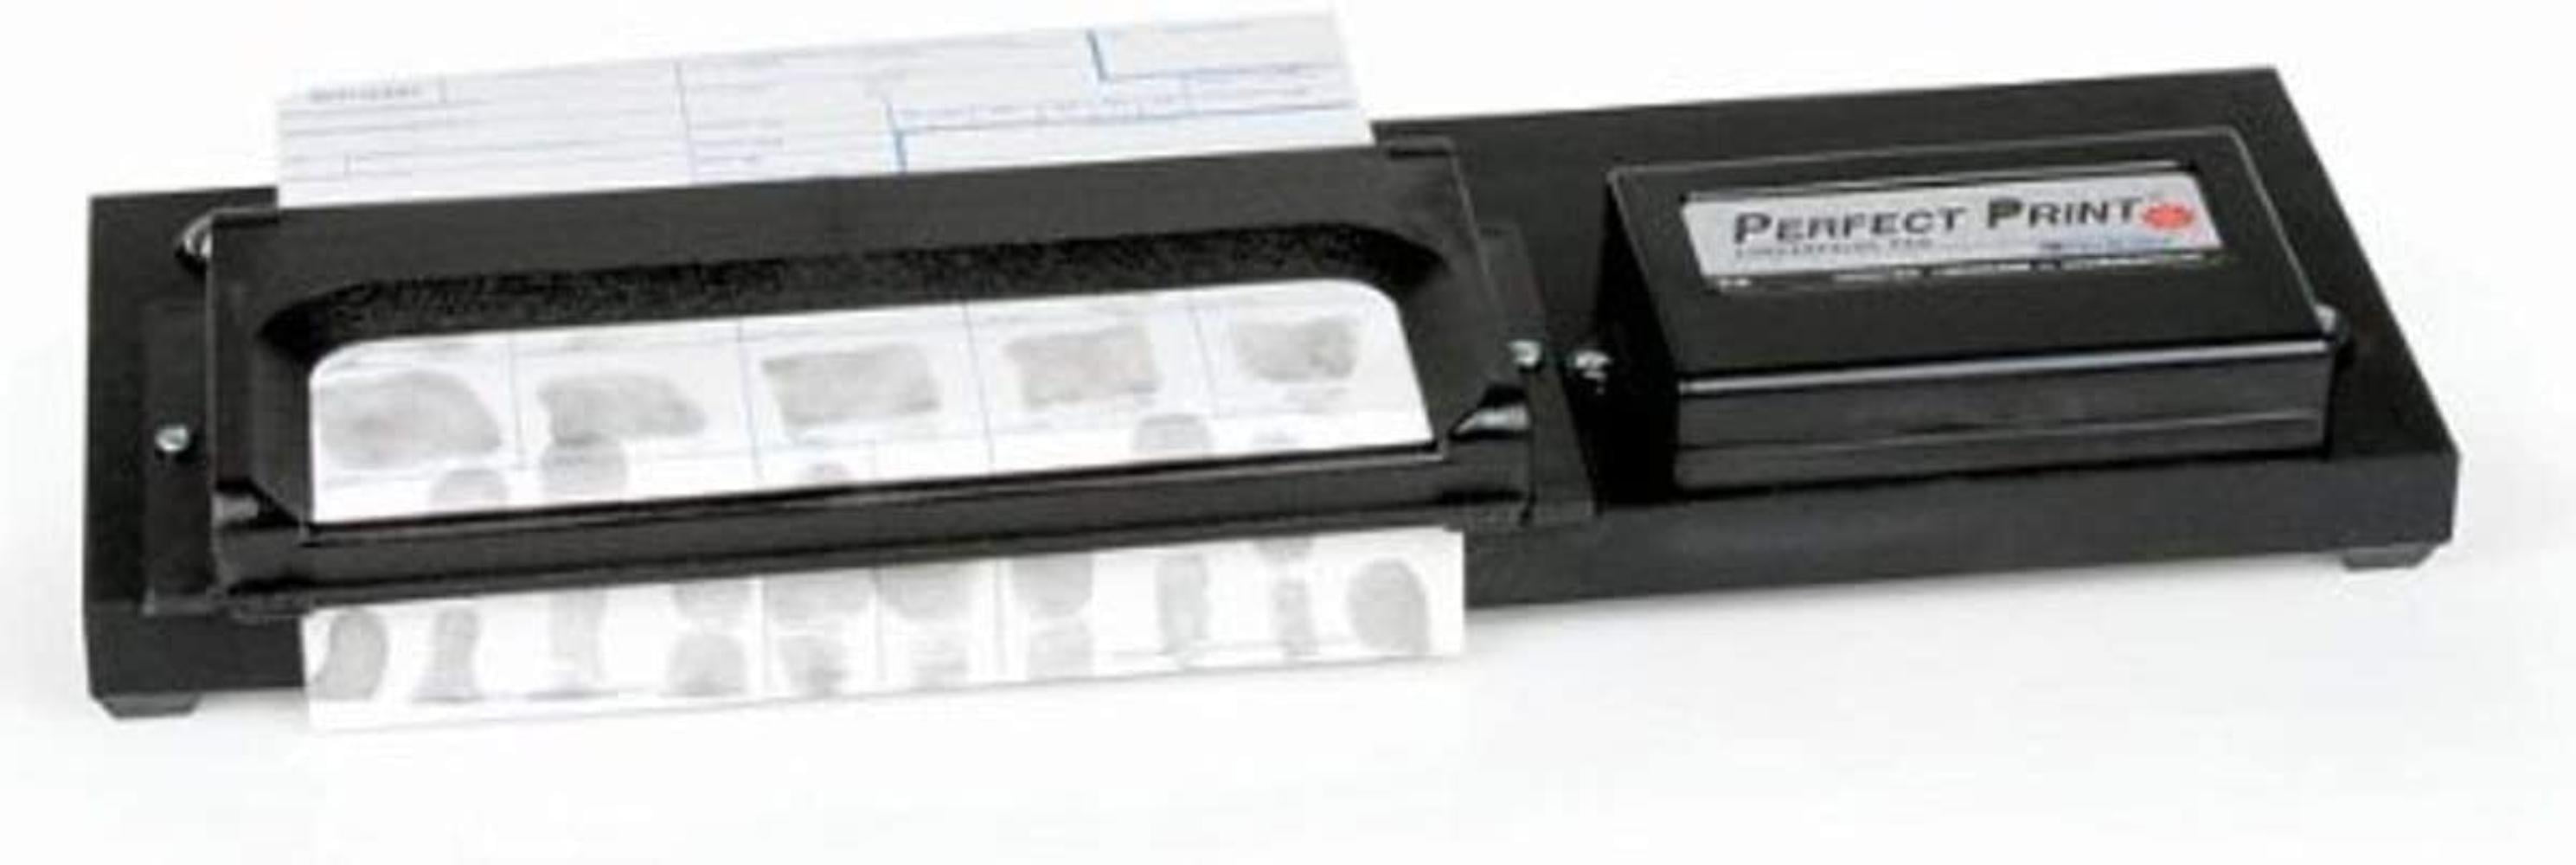 Identicator Portable Fingerprinting Station Kit 